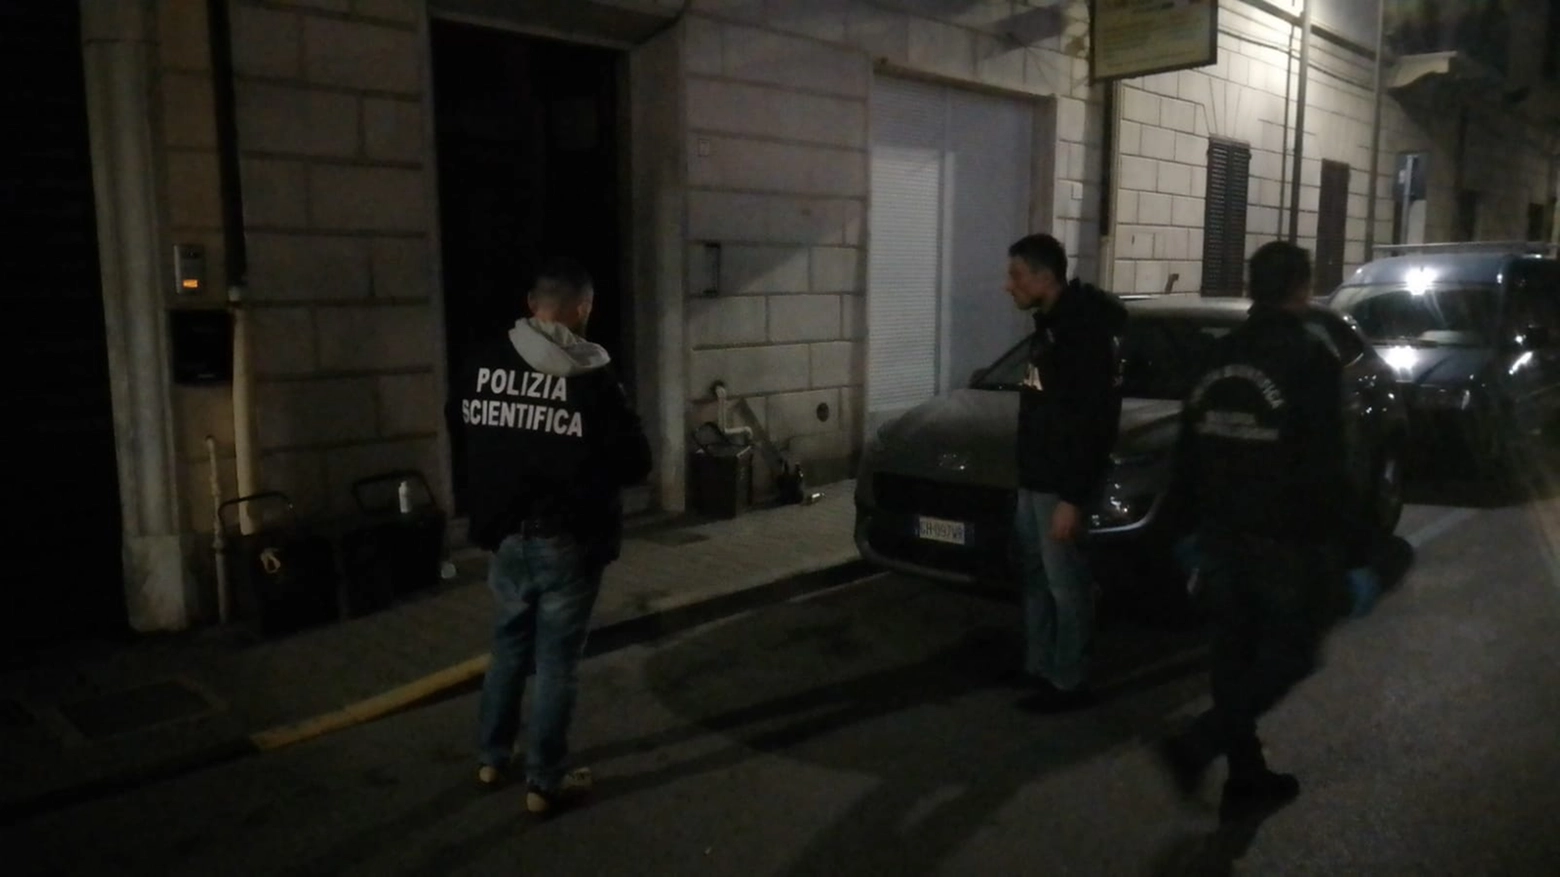 La polizia scientifica in via Zanardelli a Viareggio